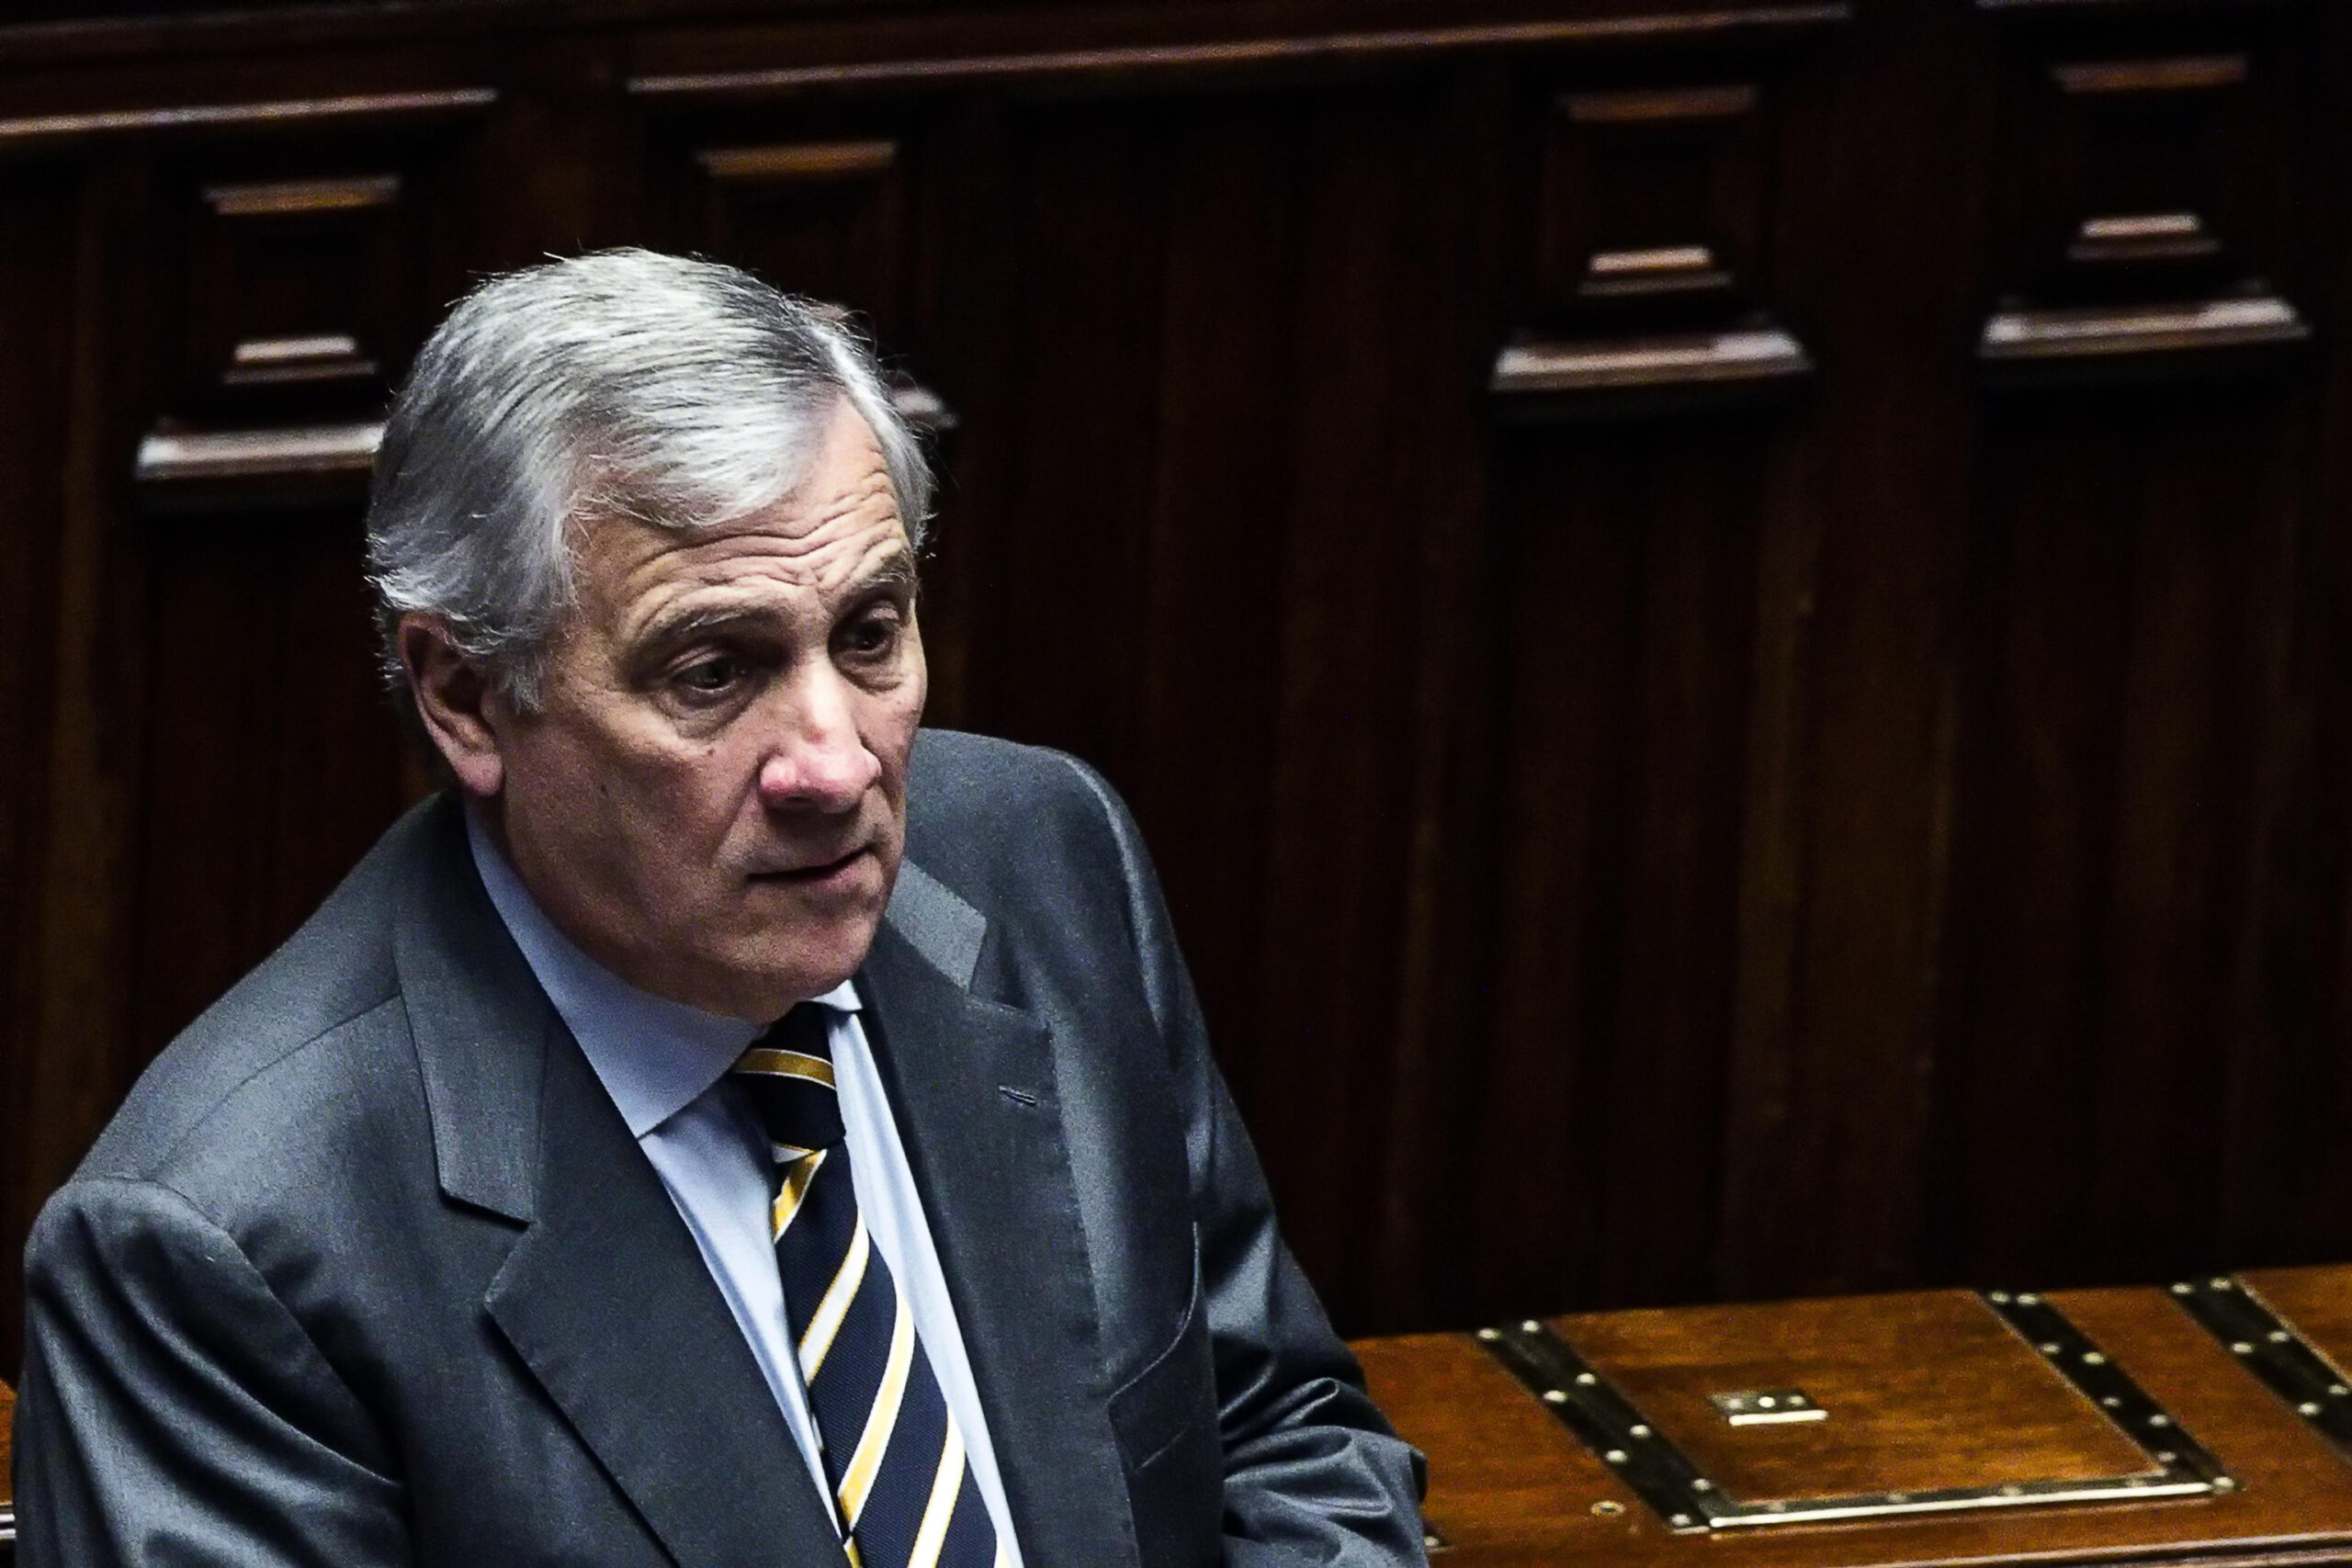 Antonio Tajani 